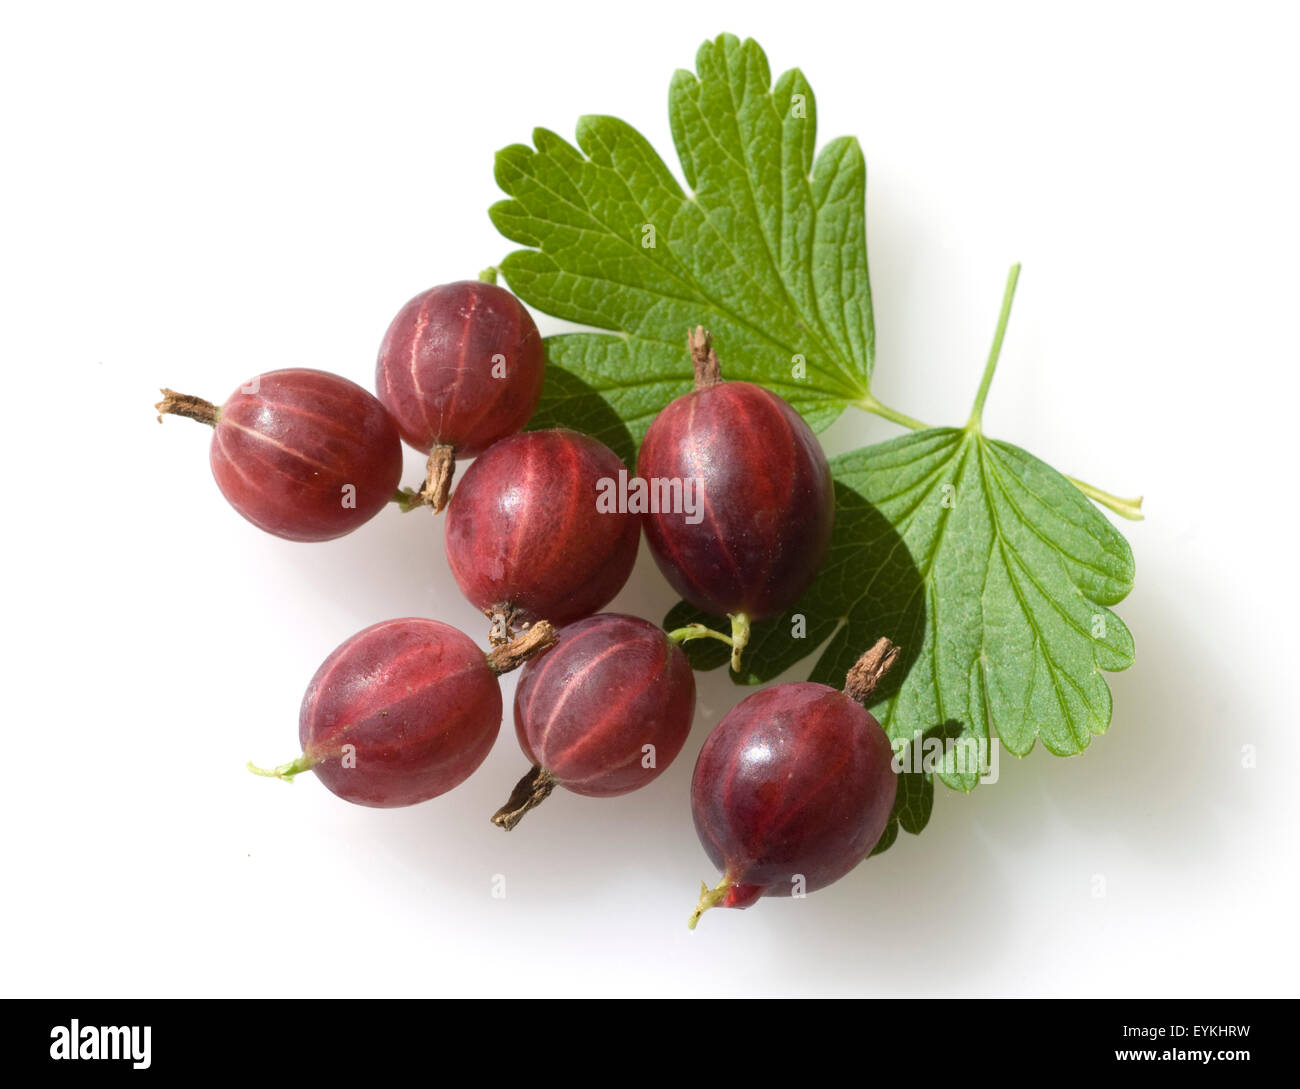 Stachelbeere, Ribes, uva-crispa, Foto de stock